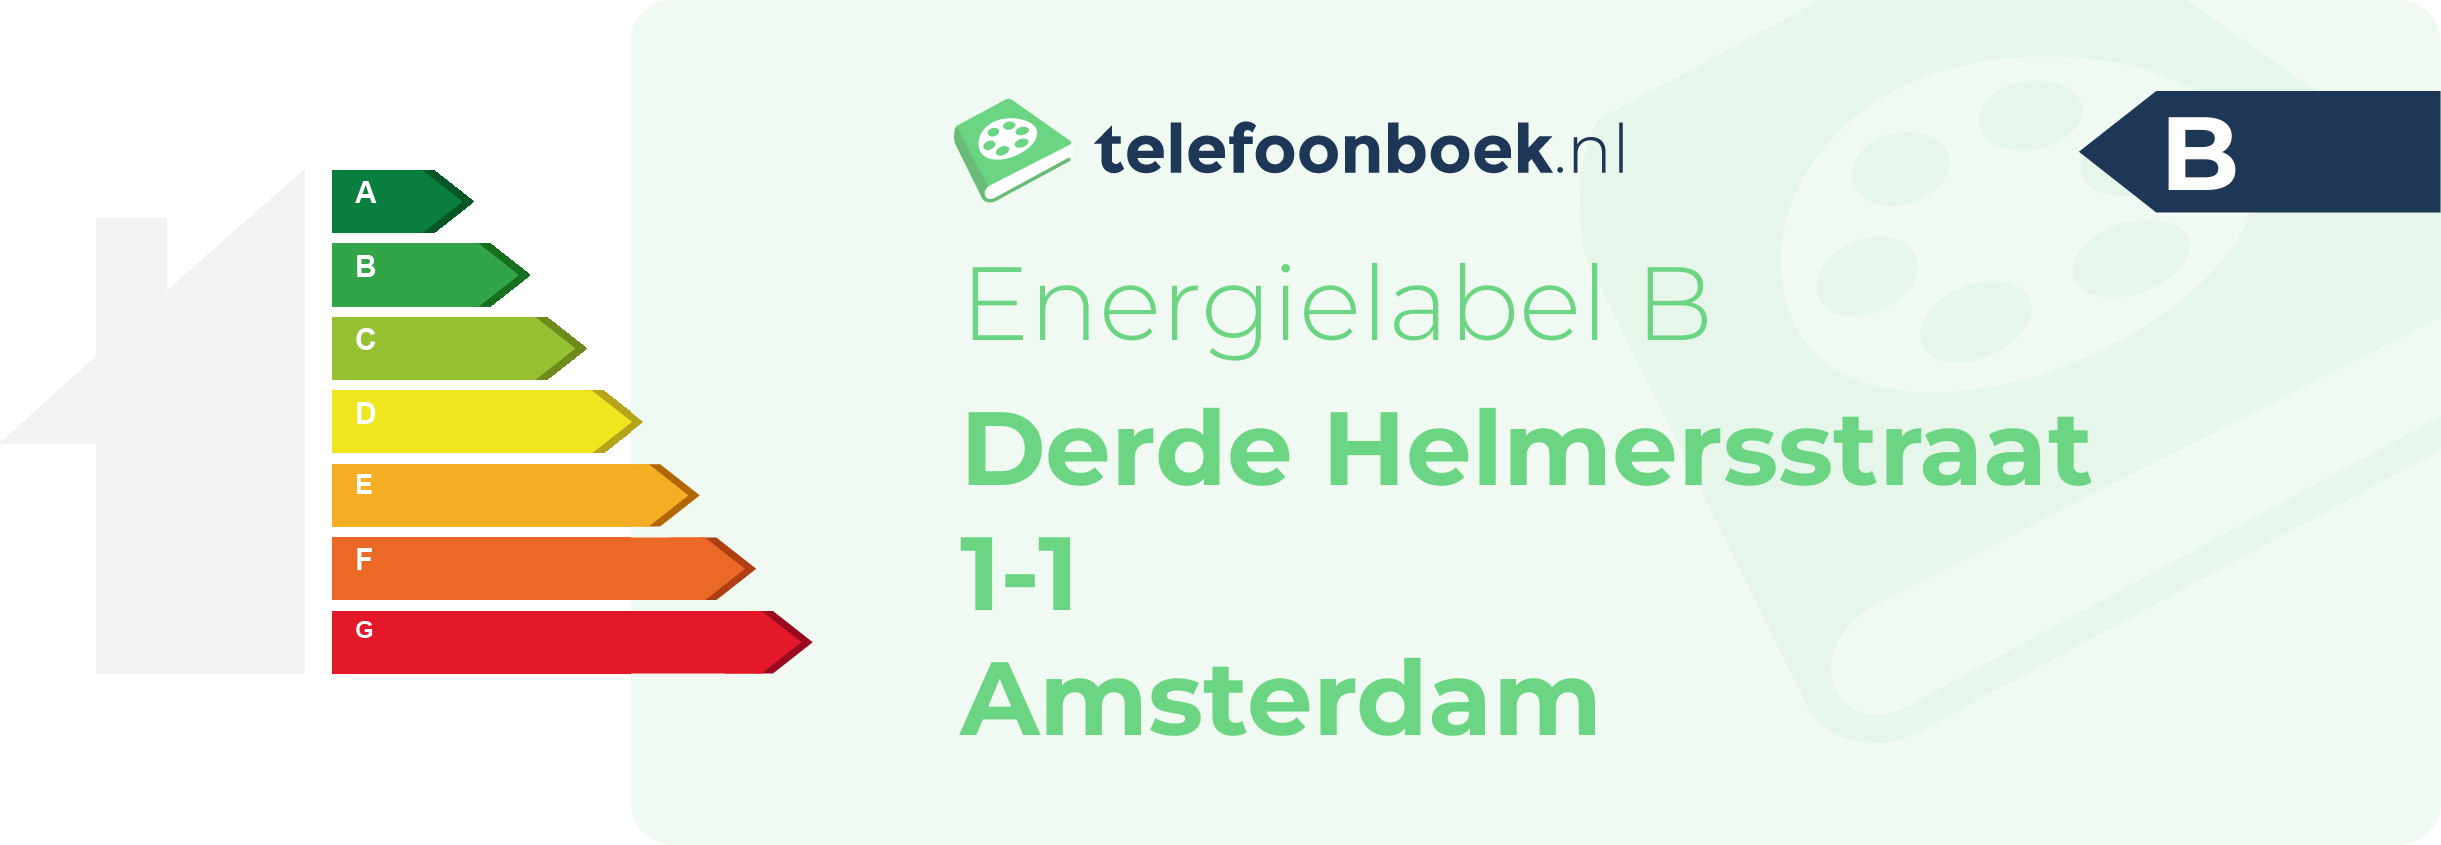 Energielabel Derde Helmersstraat 1-1 Amsterdam